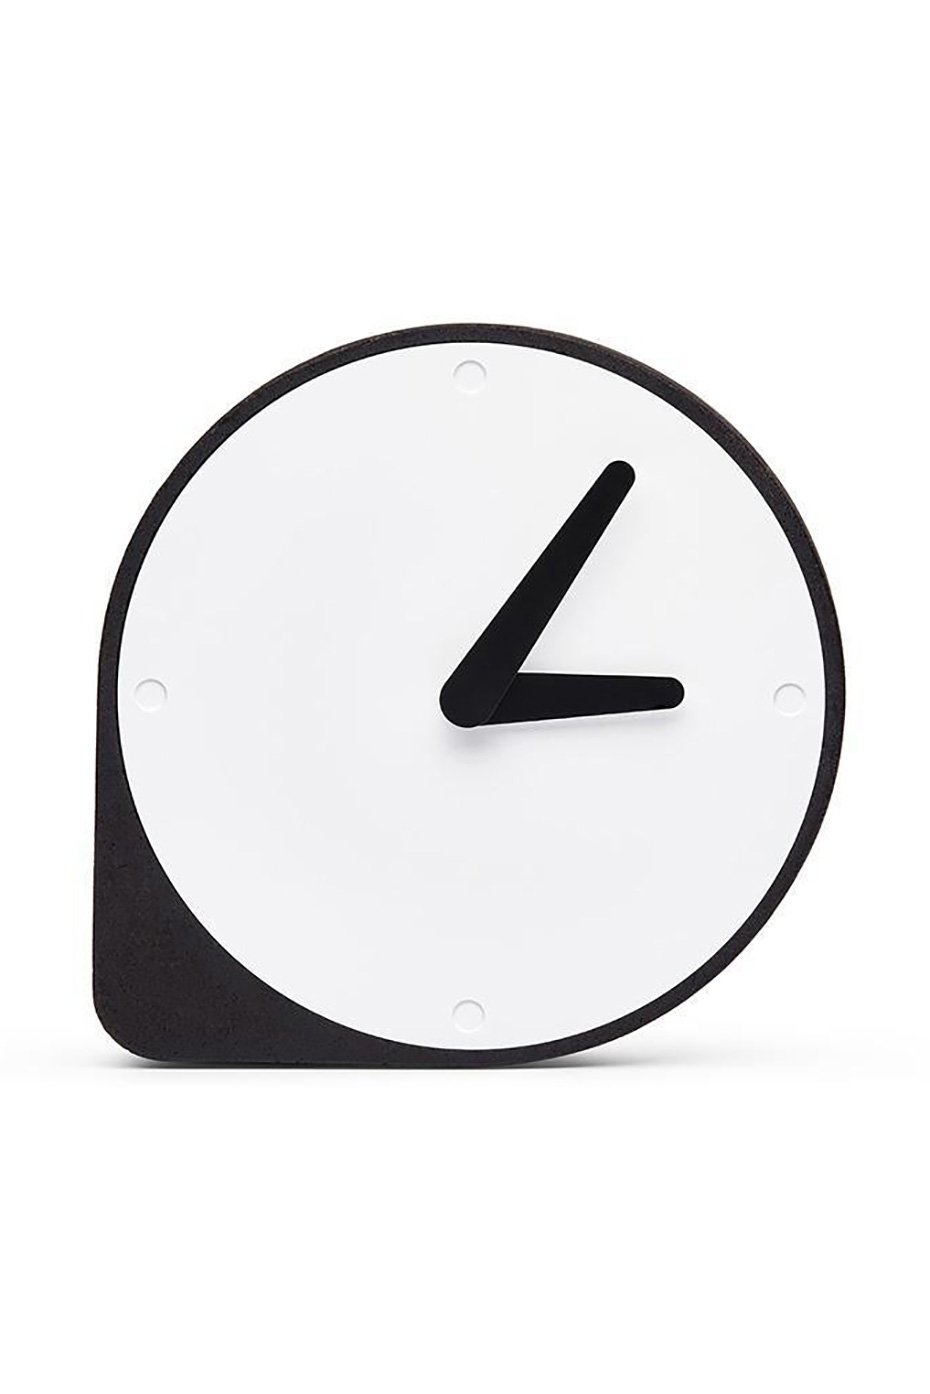 Moxon Puik Art Clork Cork Clock 